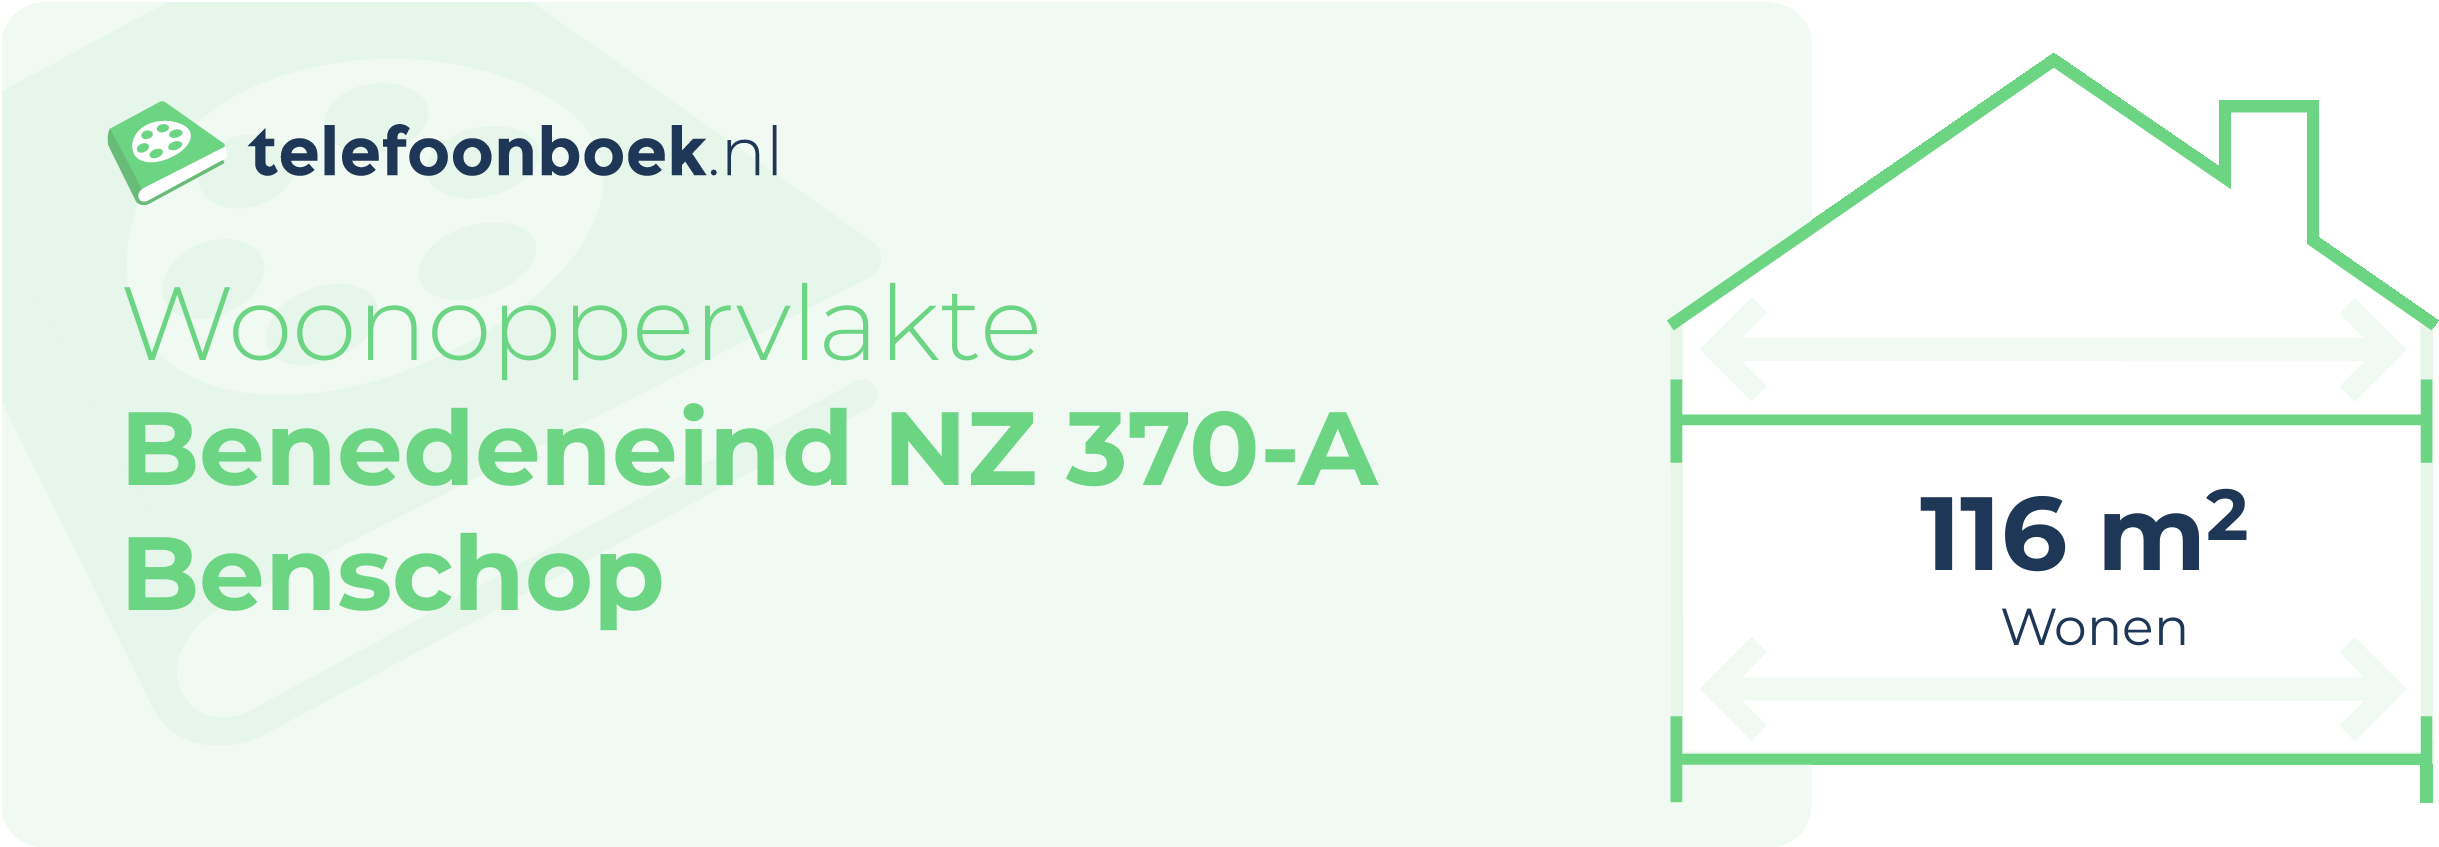 Woonoppervlakte Benedeneind NZ 370-A Benschop